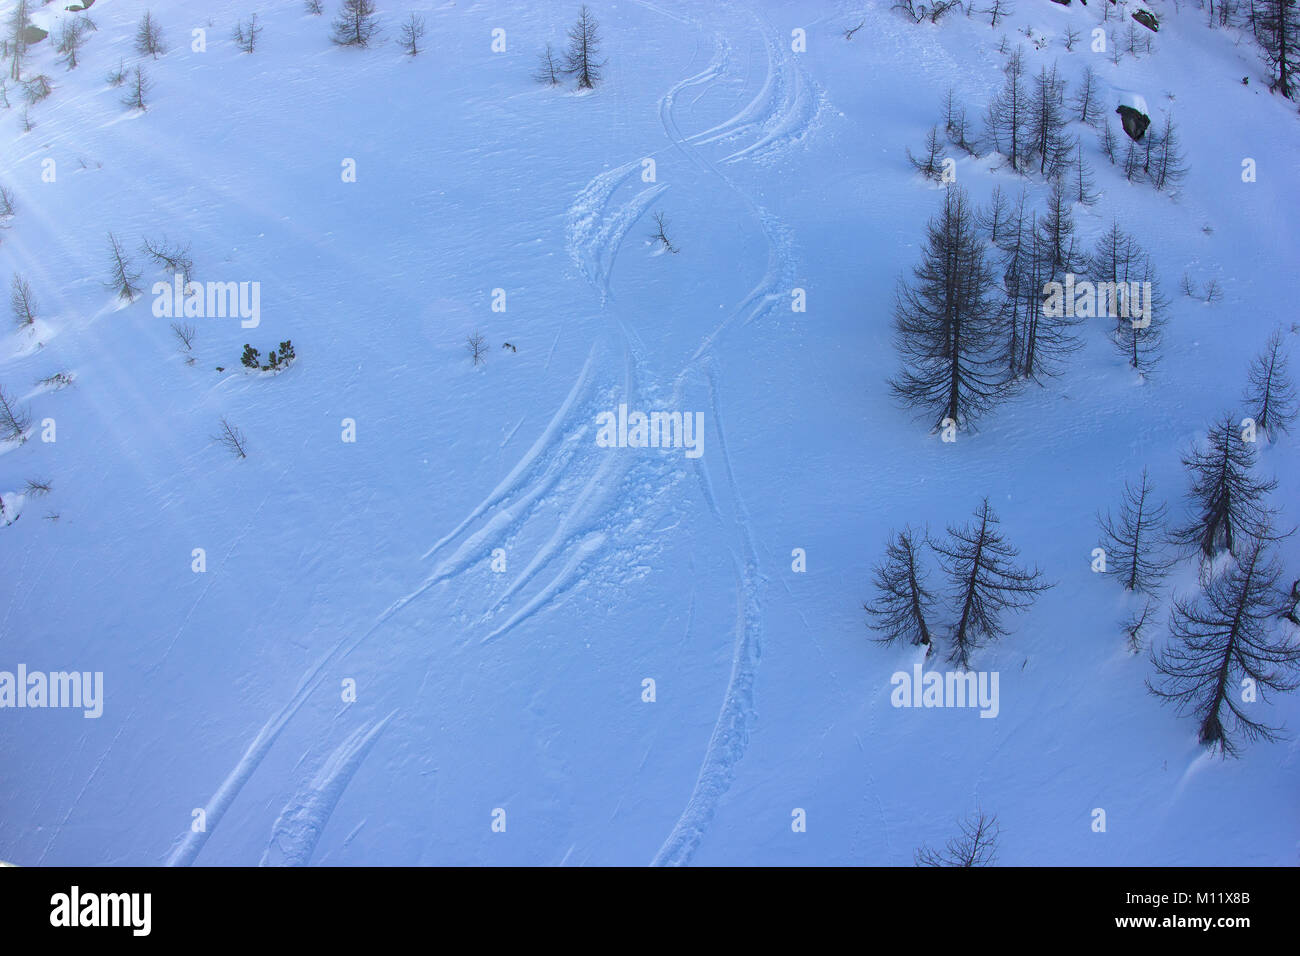 off piste tracks in fresh snow in skiing resort 'Chiesa in Valmalenco', Sondrio, Italy Stock Photo